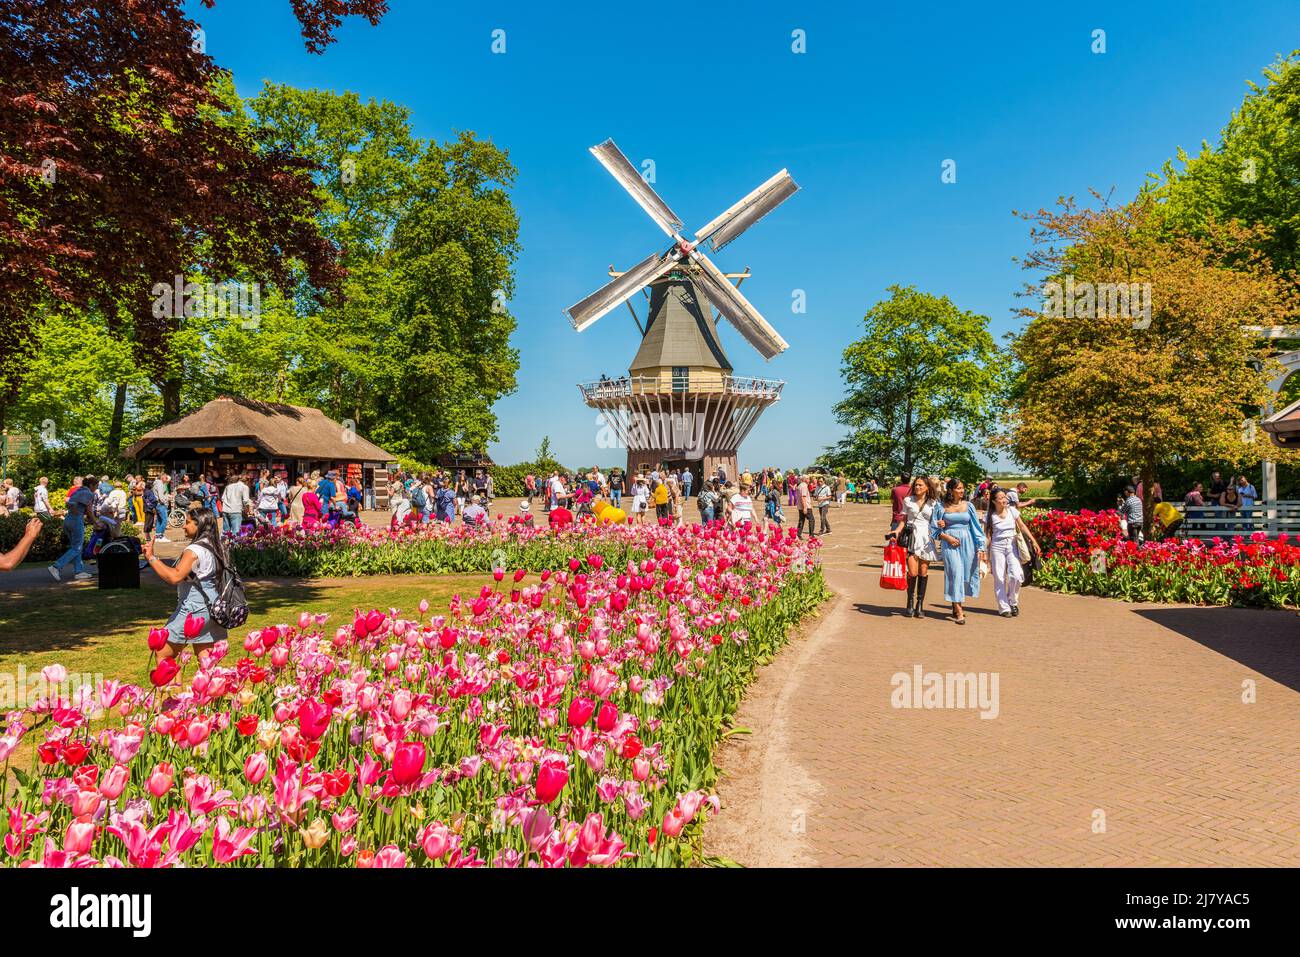 Windmühle im Gartenkomplex Keukenhof in Lisse, Südholland, Niederlande. Keukenhof ist einer der größten Blumengärten der Welt. Stockfoto